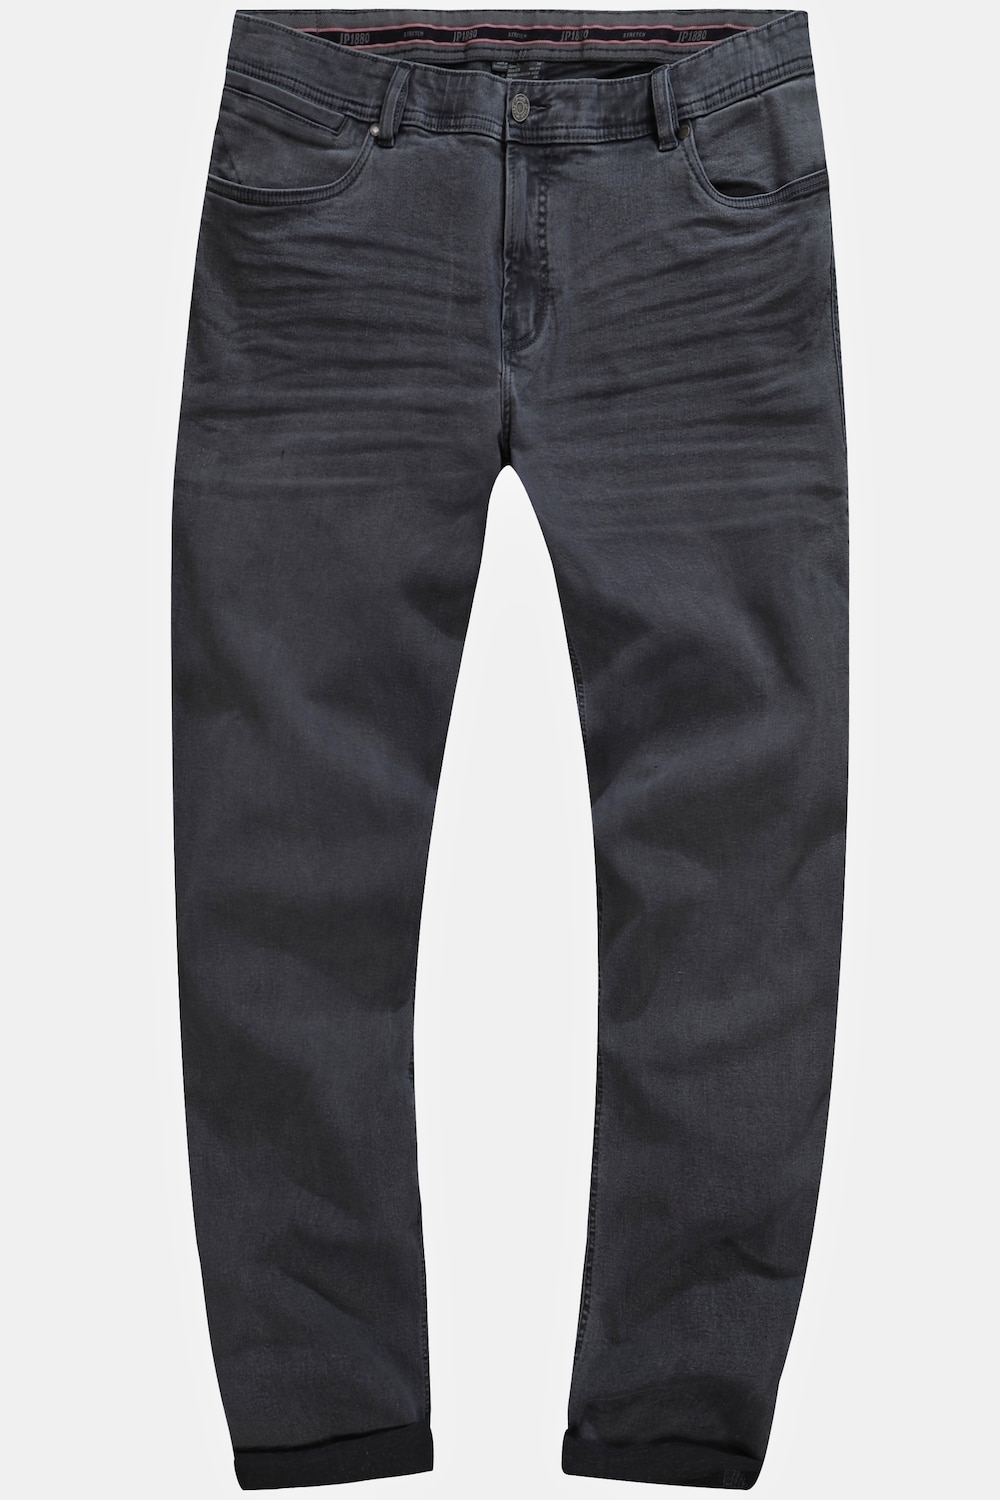 Grote Maten Jeans, Heren, grijs, Maat: 30, Katoen, JP1880